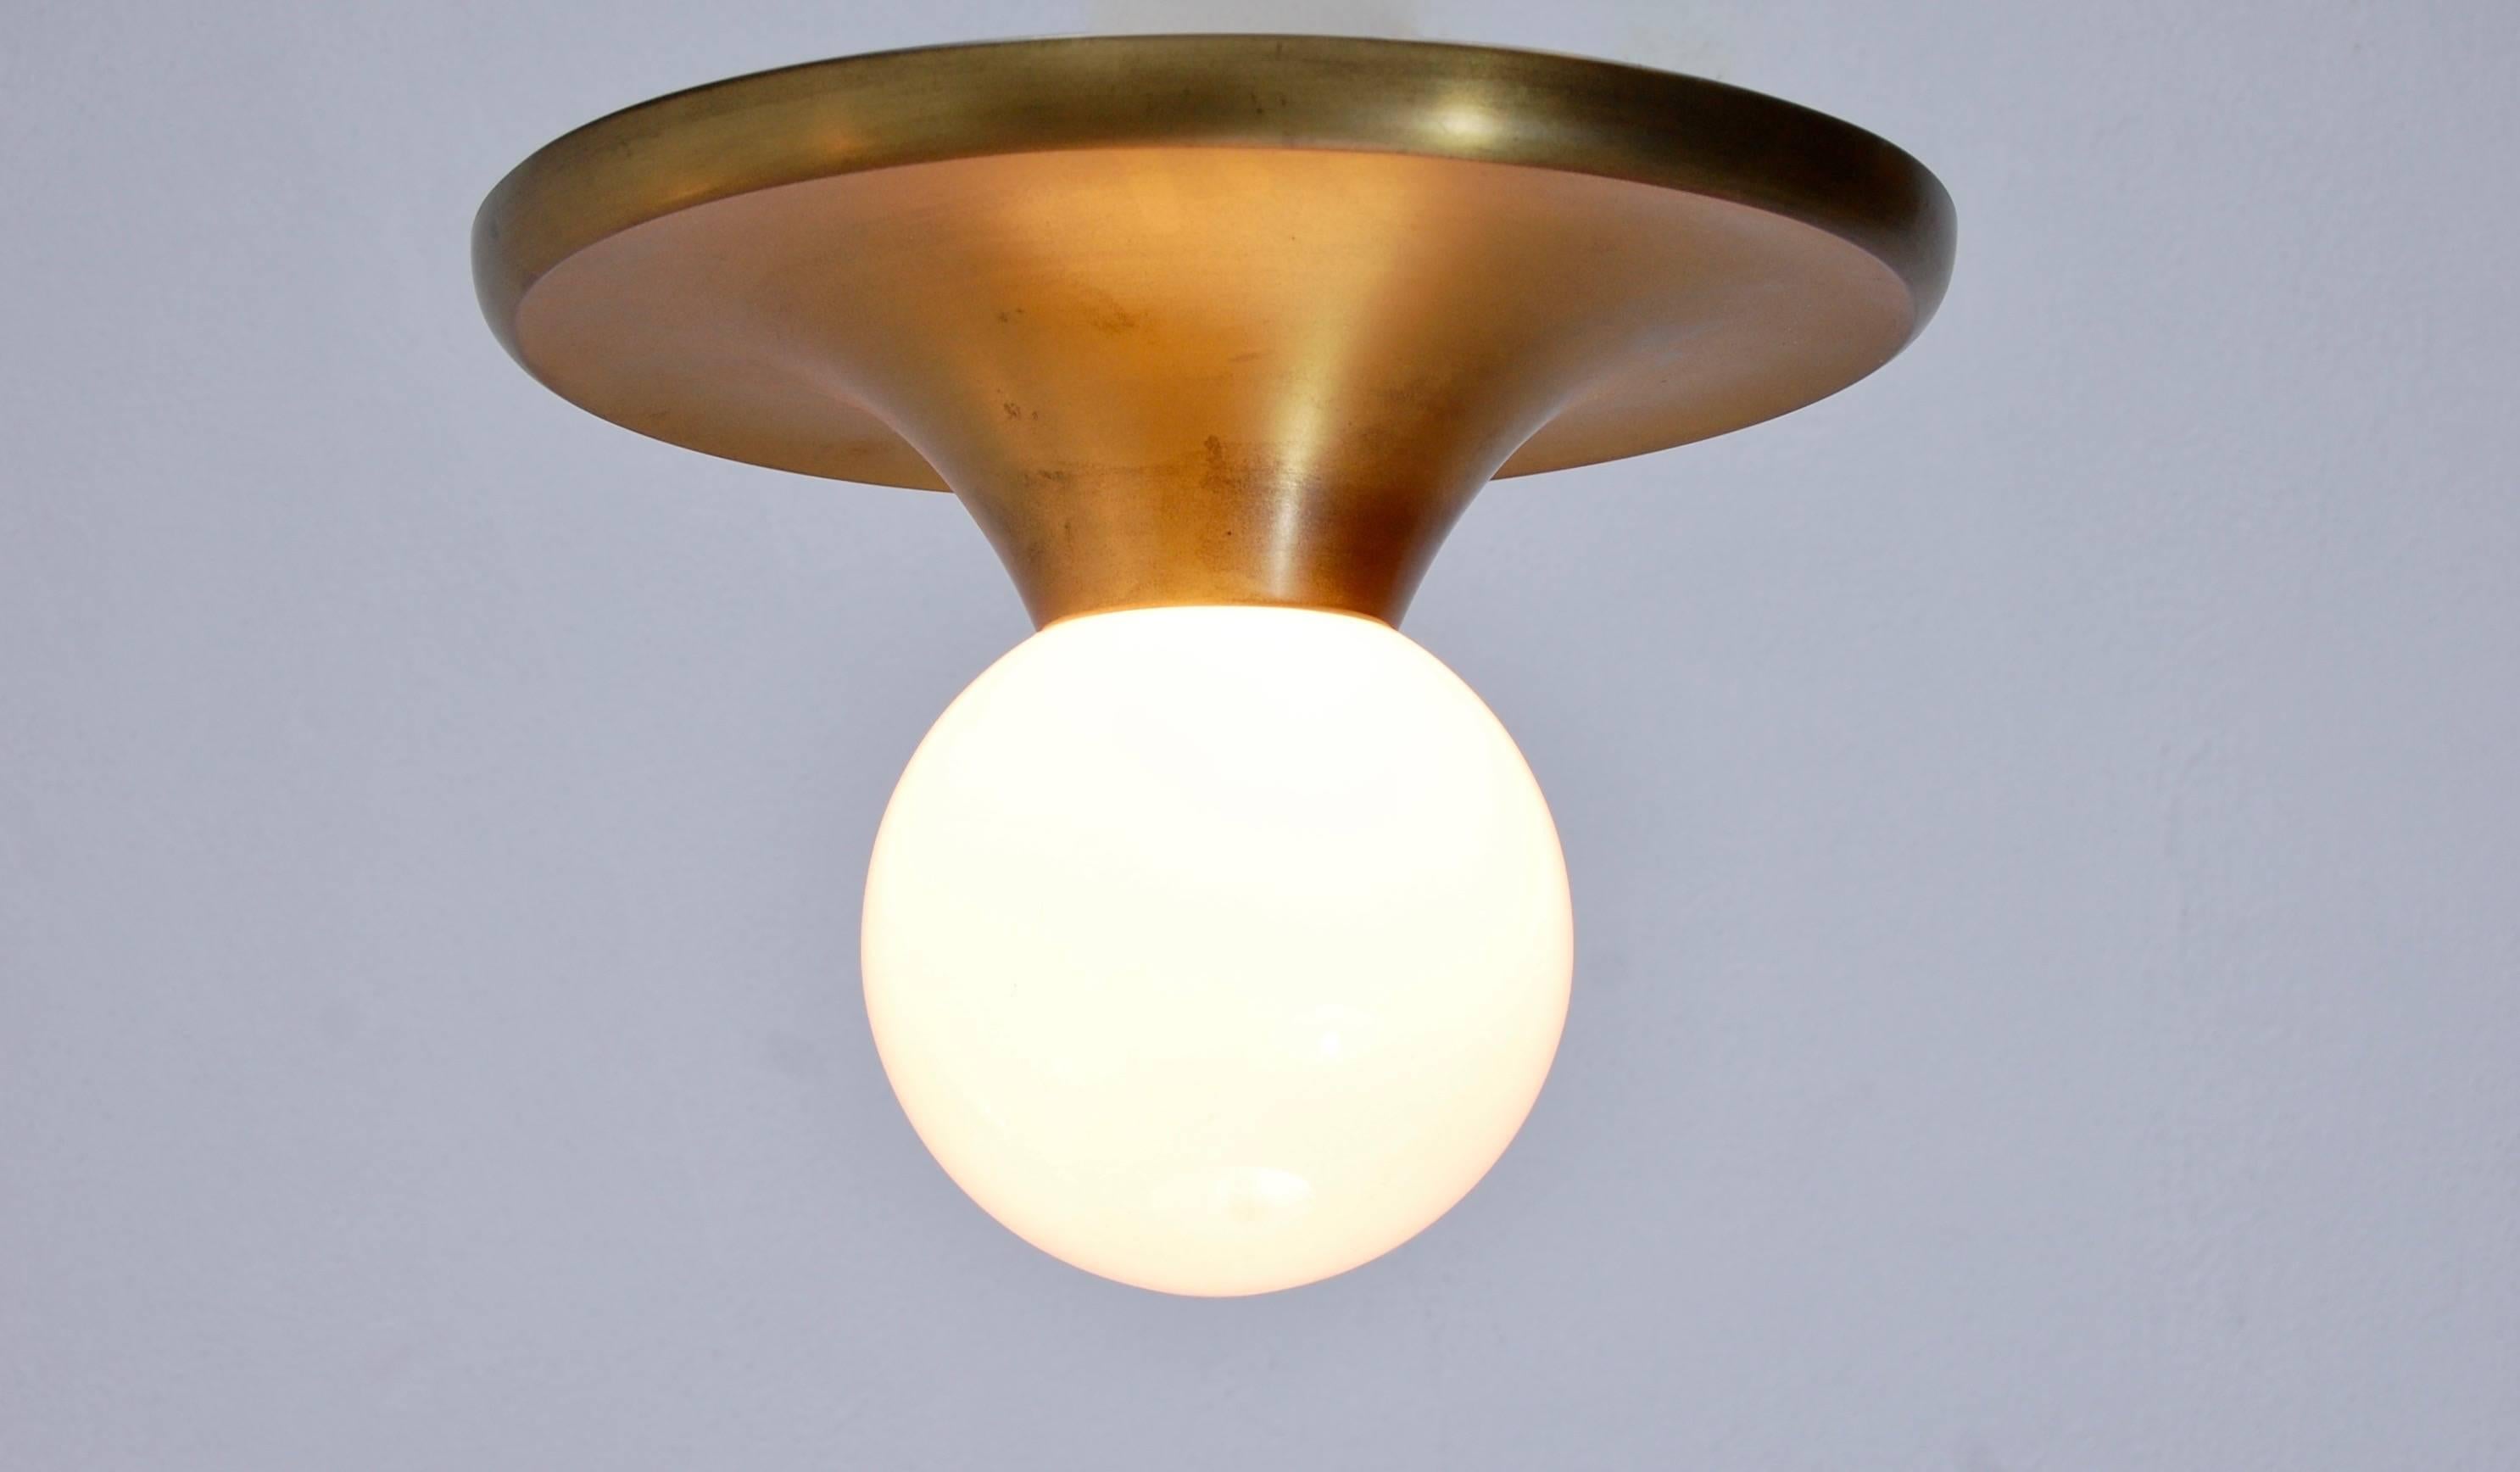 Italian Light Ball Lamp by: Achille & Pier Giacomo Castiglioni